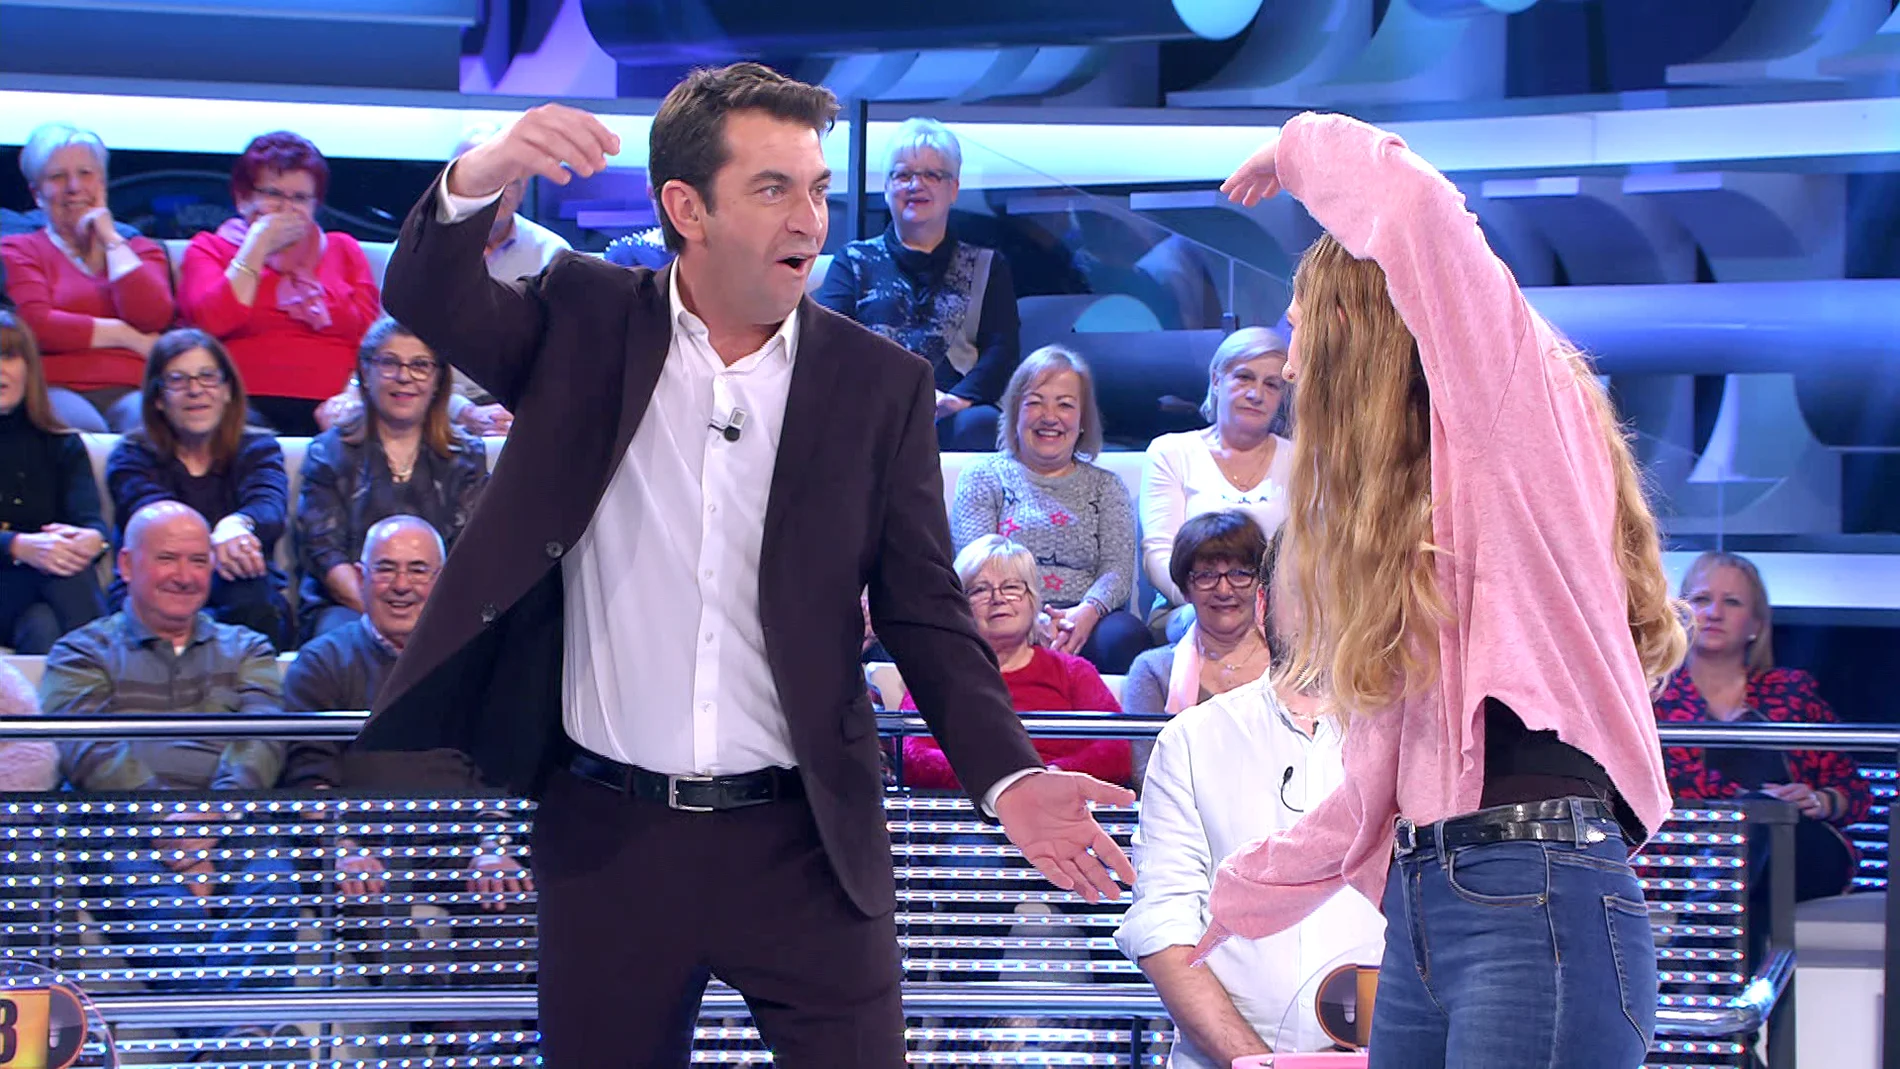 "¡Son 20 años con la misma broma!", el reproche de un concursante a Arturo Valls en '¡Ahora caigo!'